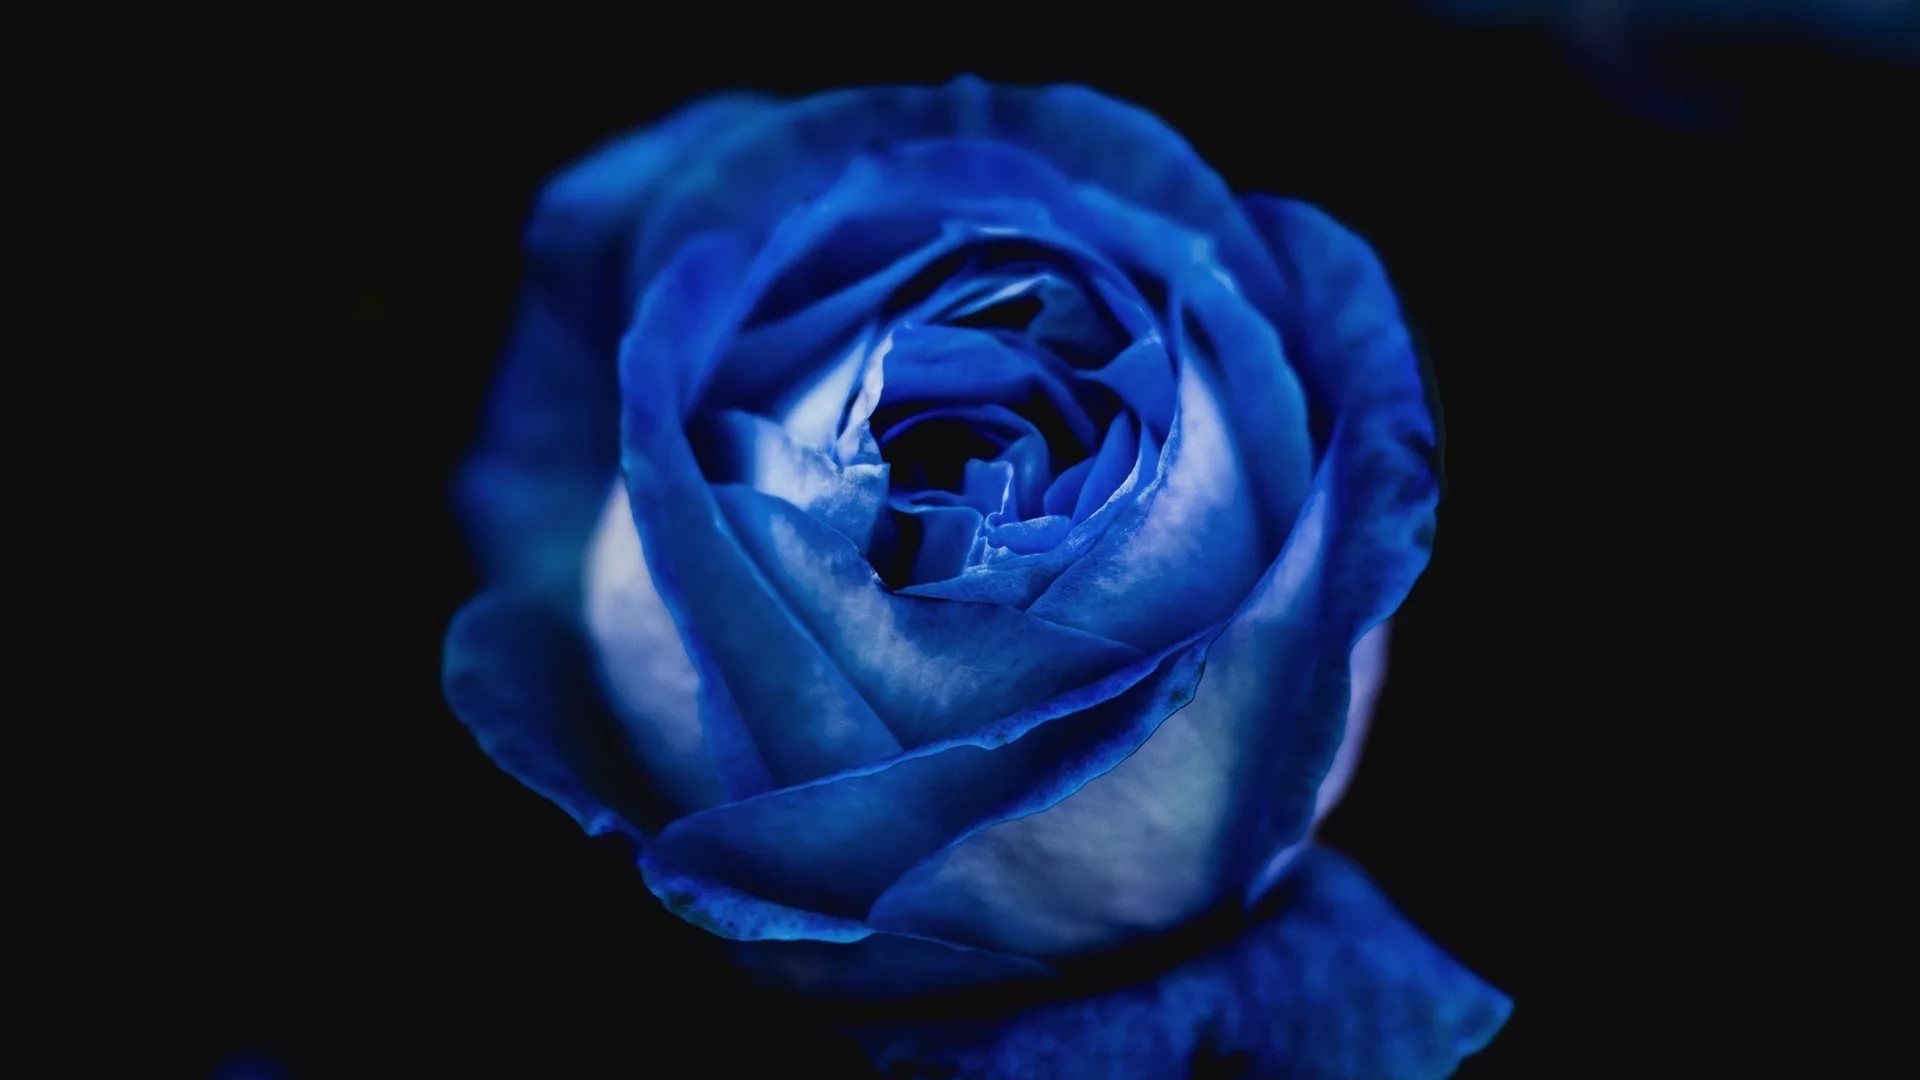 Blue Rose full wallpaper